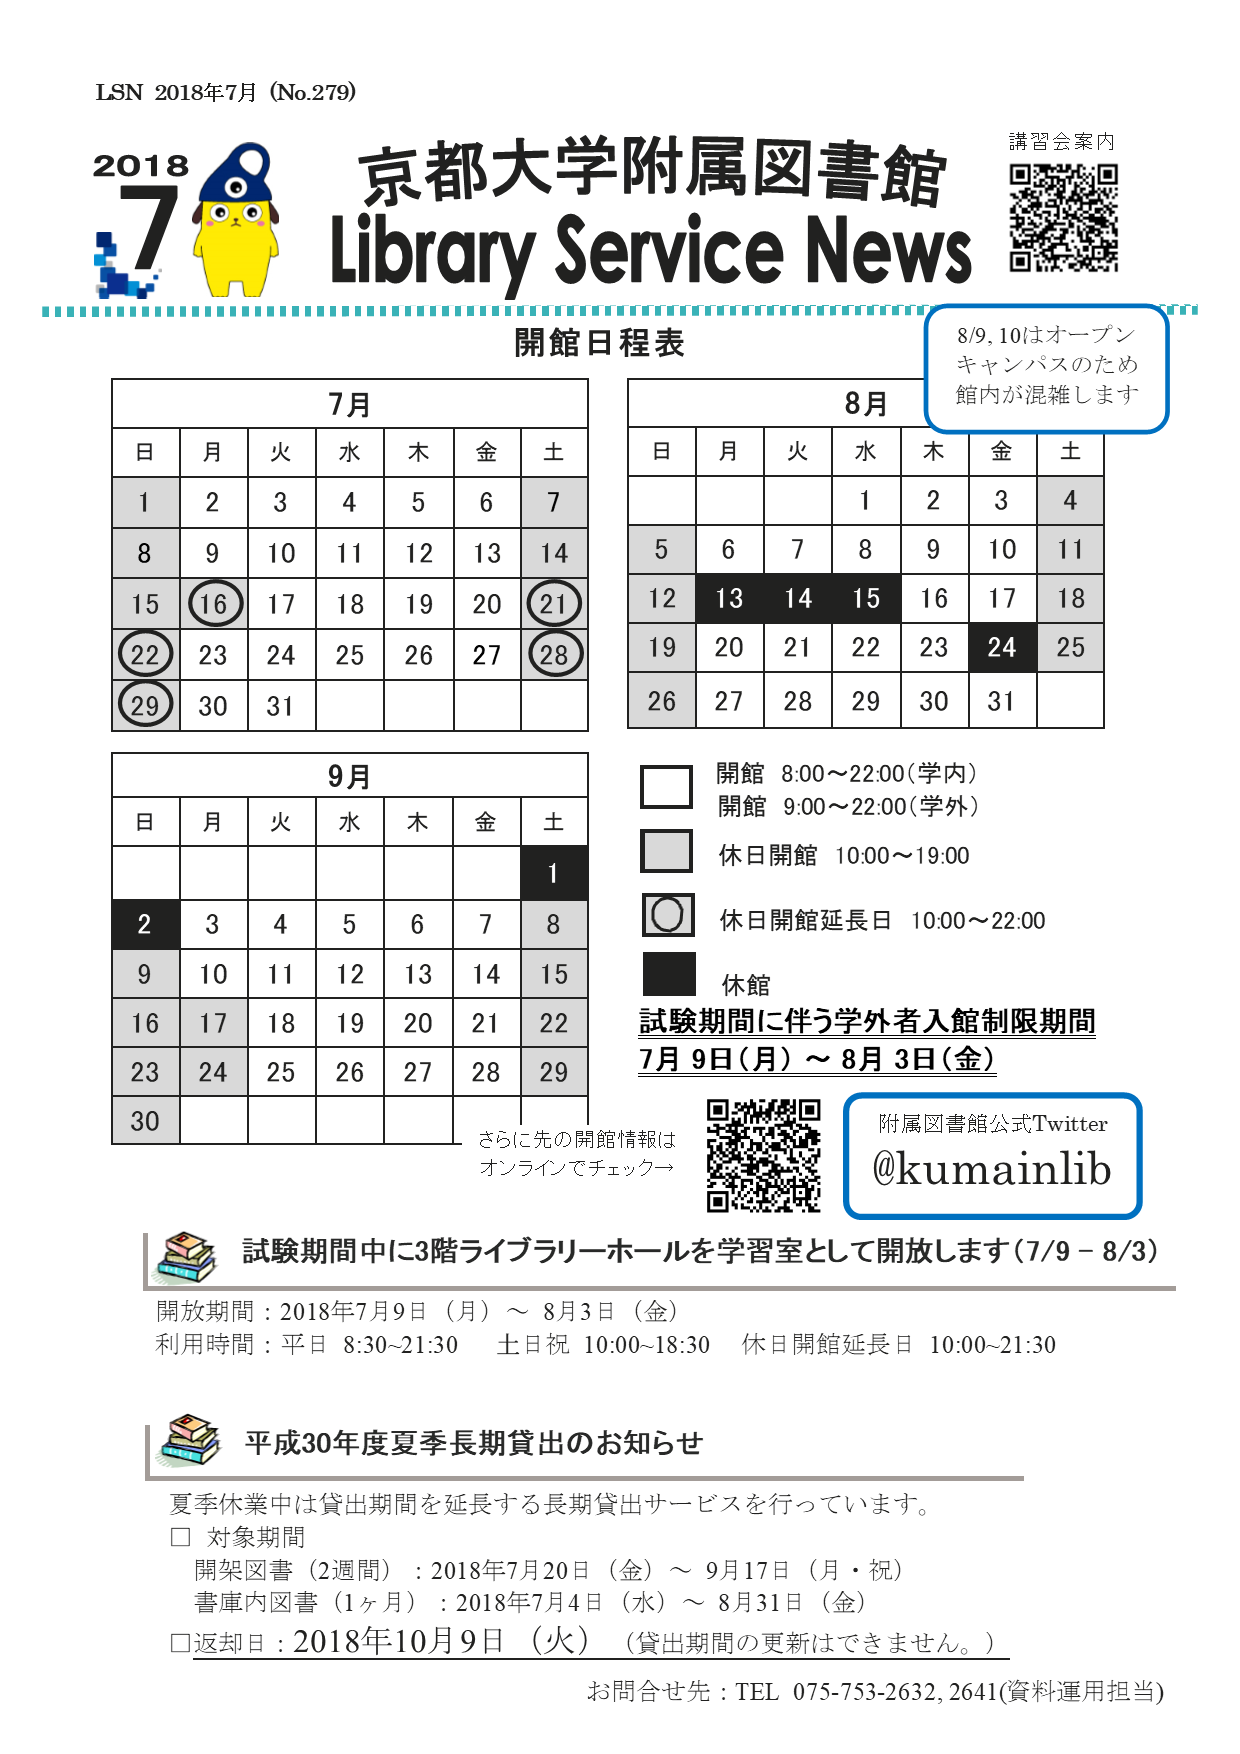 京都大学図書館機構 附属図書館 開館カレンダー付lsn18年7月号を発行しました